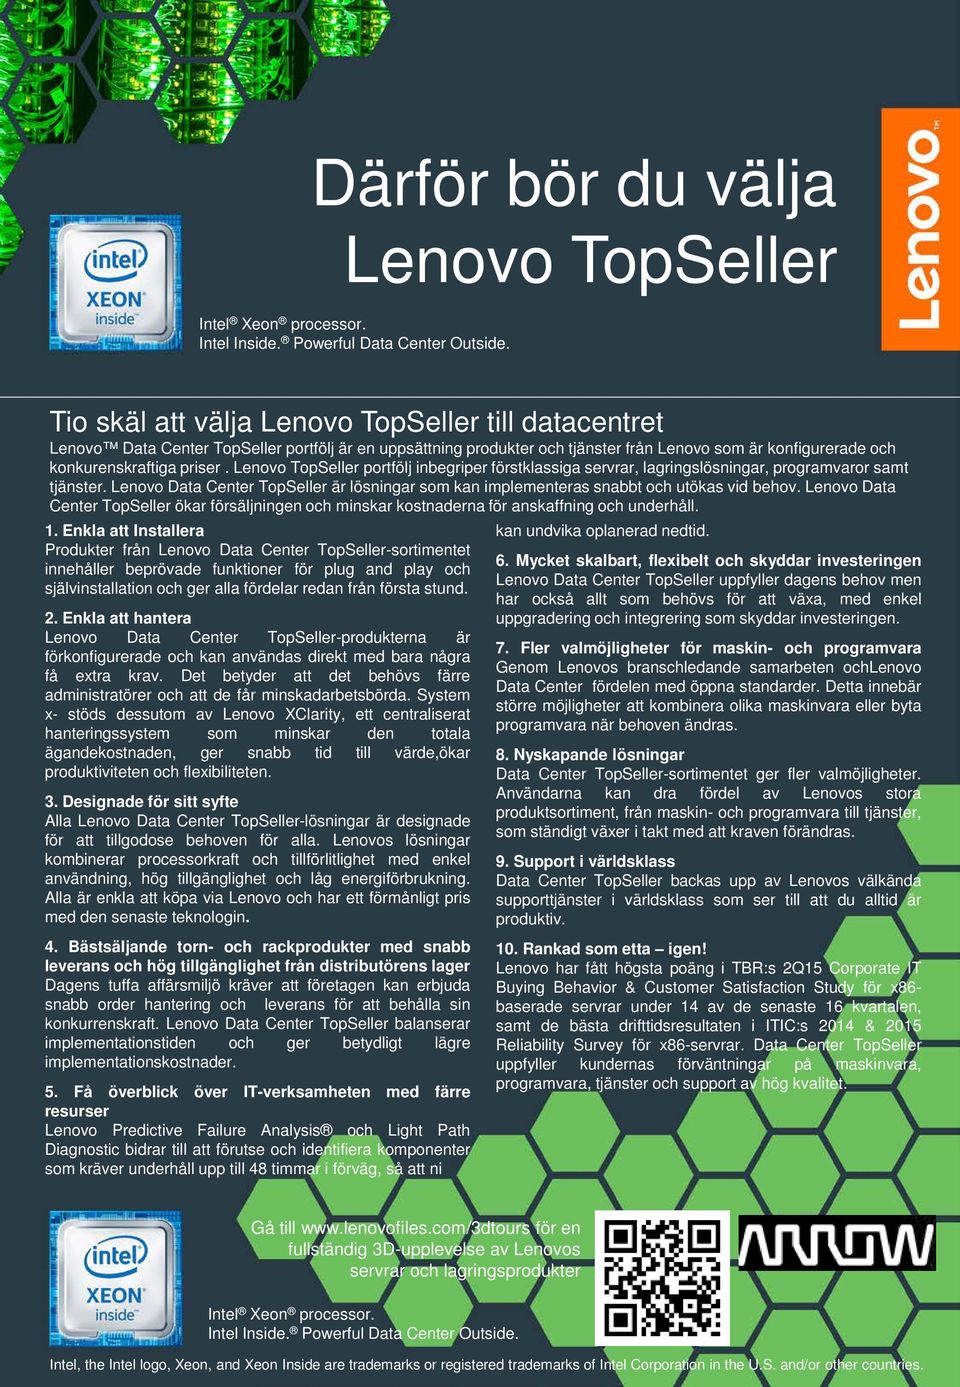 Lenovo Data Center TopSeller är lösningar som kan implementeras snabbt och utökas vid behov. Lenovo Data Center TopSeller ökar försäljningen och minskar kostnaderna för anskaffning och underhåll. 1.